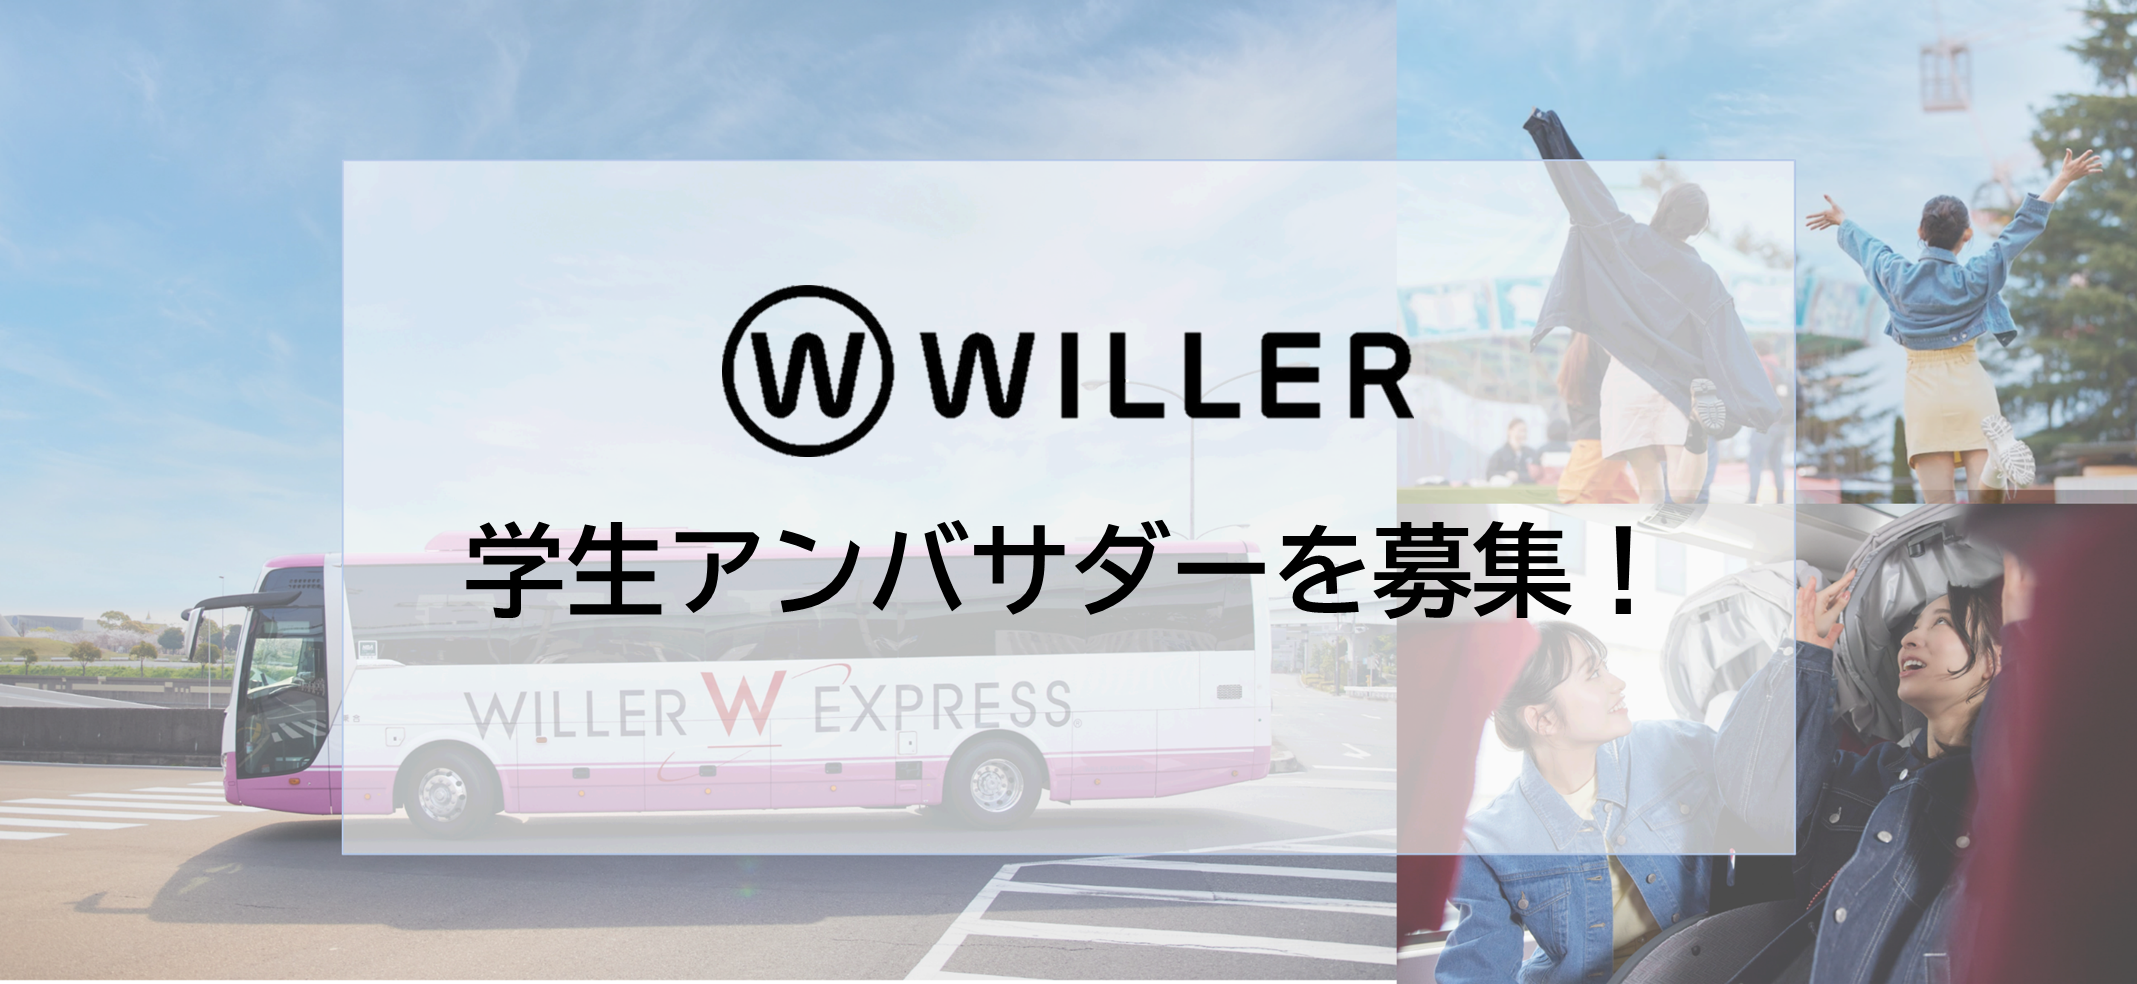 WILLER MARKETING：『WILLER College（学生アンバサダー）』メンバーを募集します！ ～旅行好きのみなさん、よりよい旅行・移動サービスを一緒に作っていきませんか？～